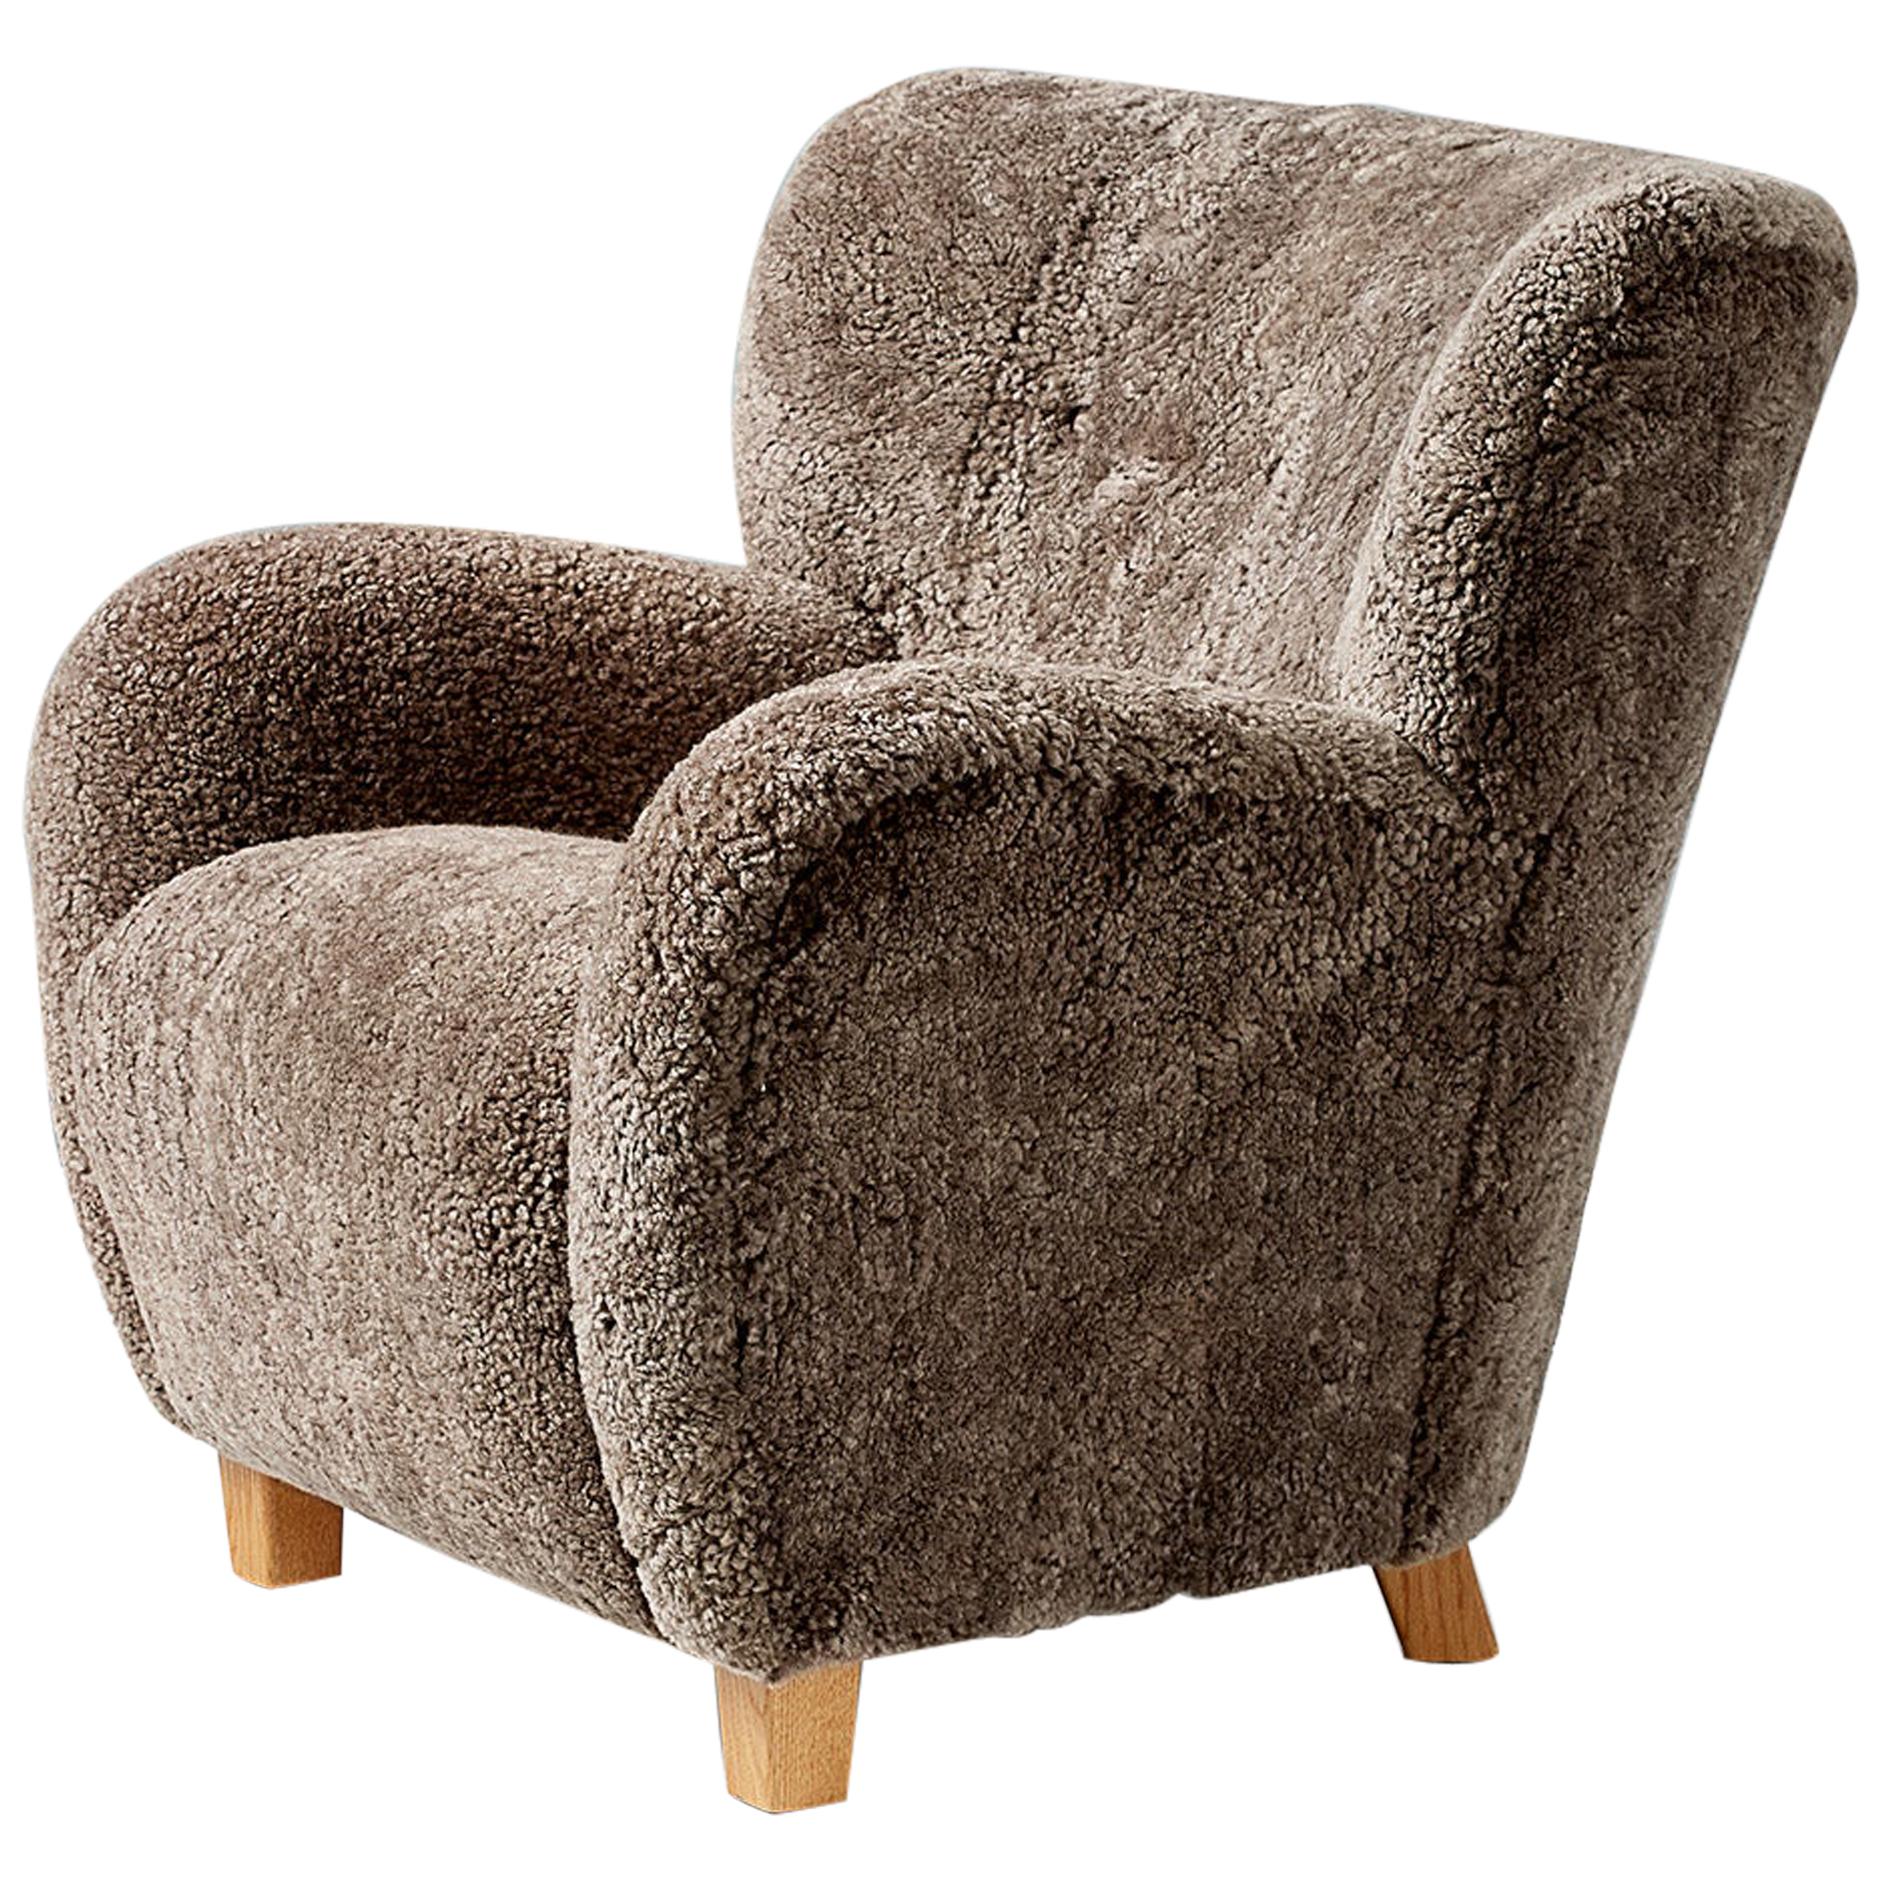 Maßgefertigter Karu-Sessel aus Schafsleder mit passendem Polsterhocker